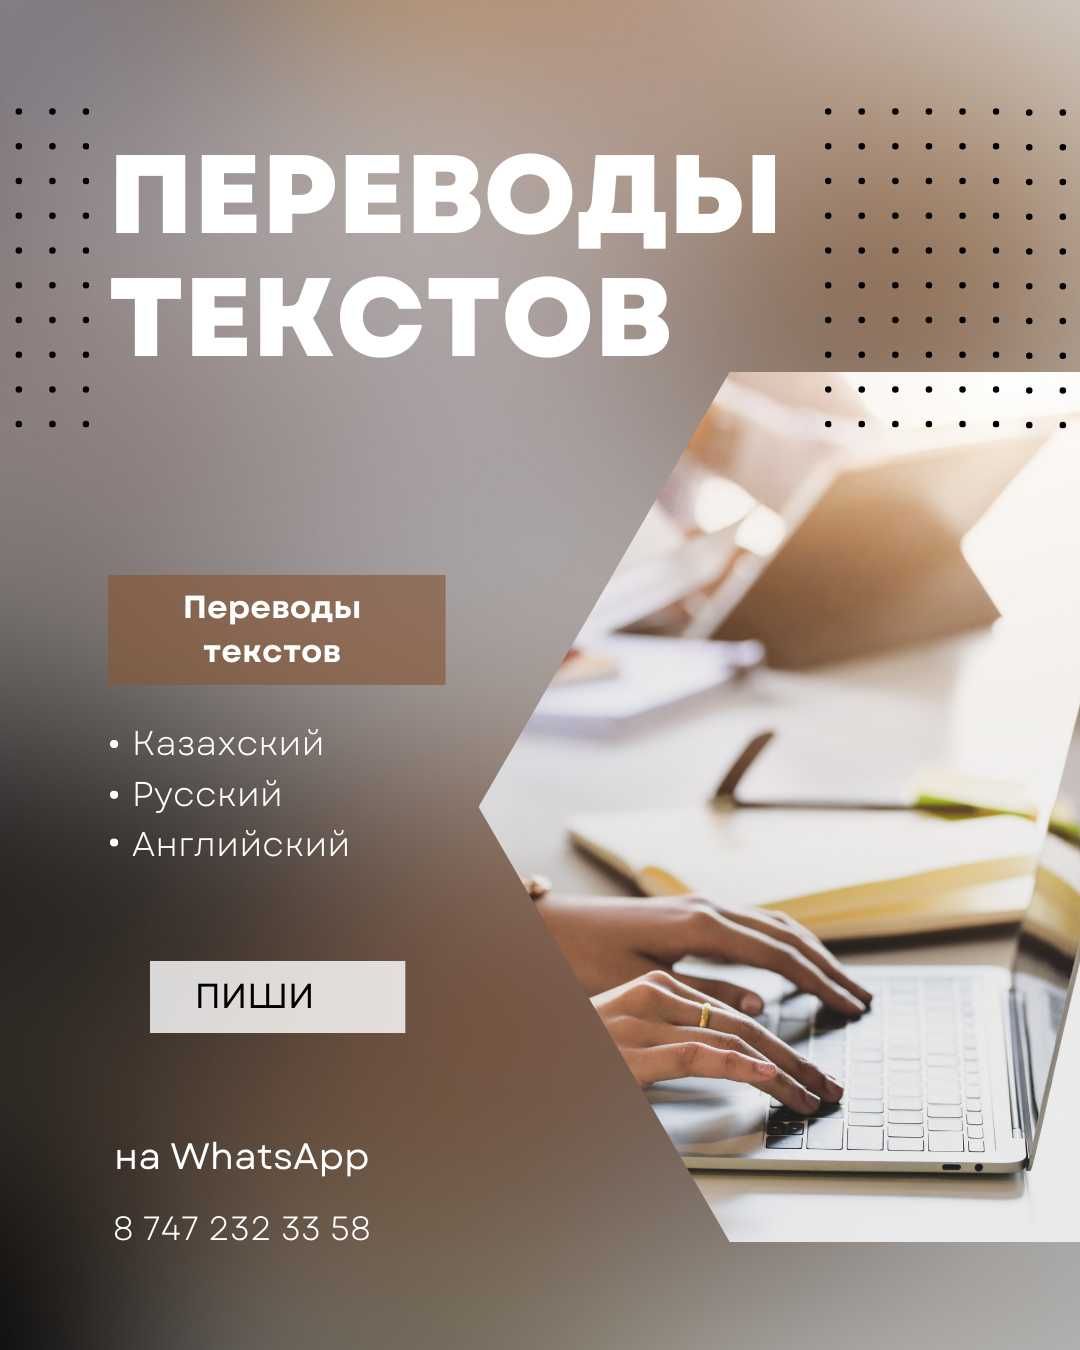 Качественный перевод текстов на казахском, русском и английском языках